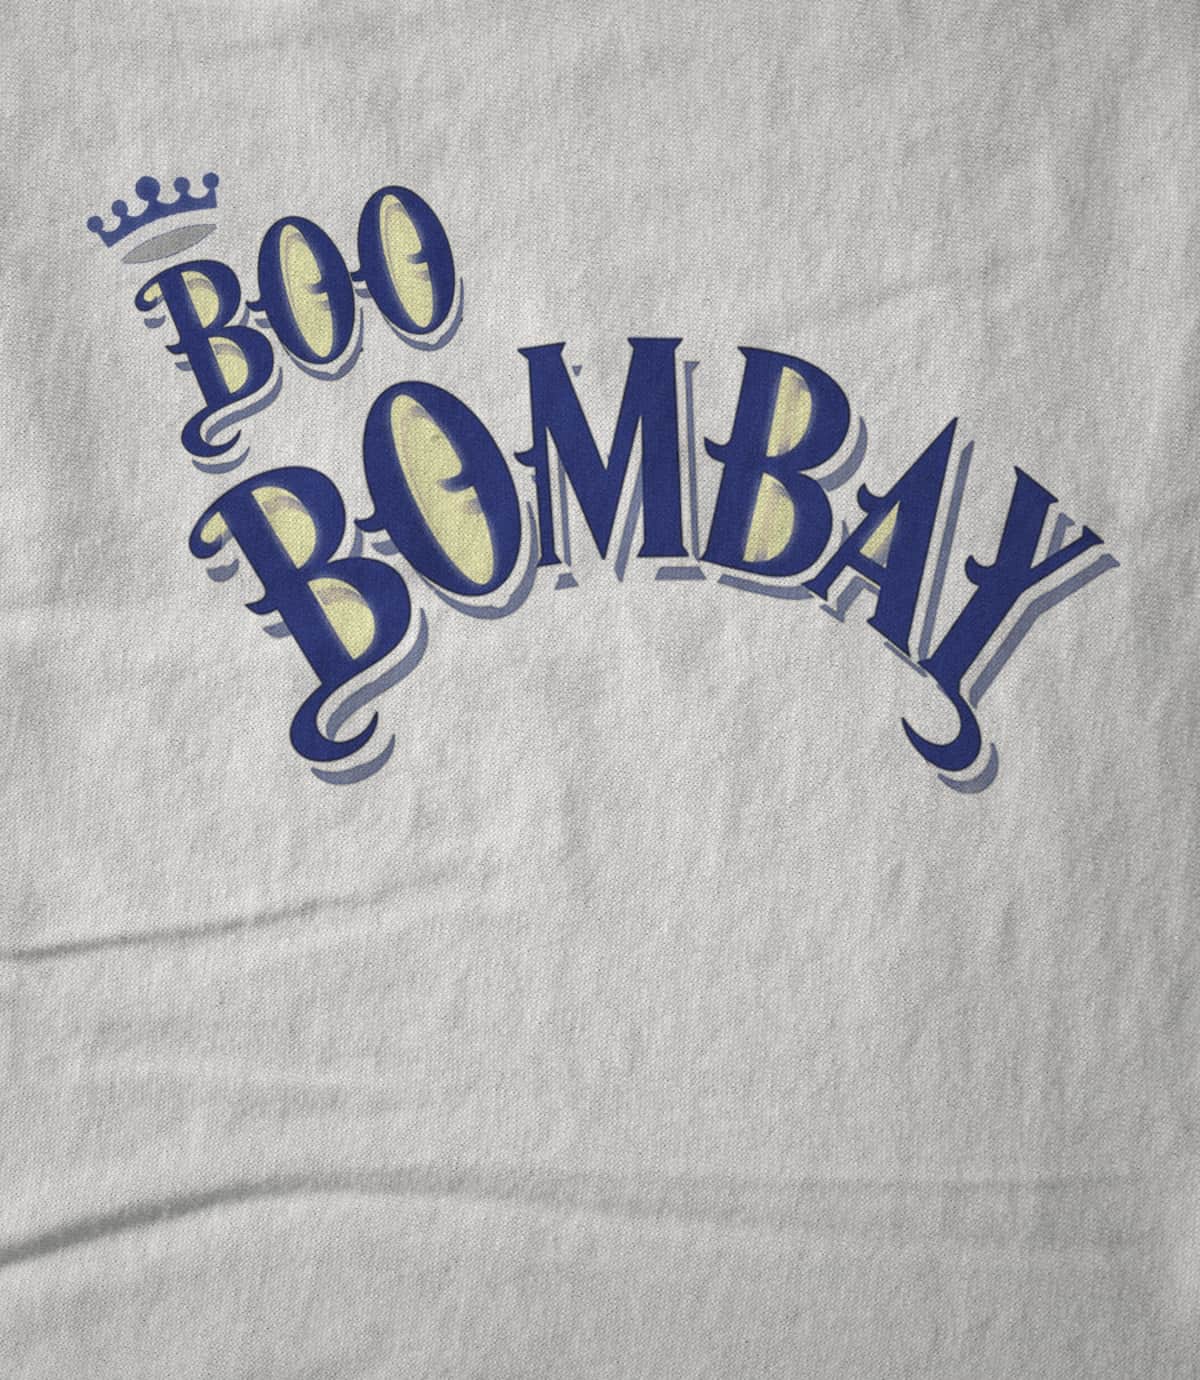 Boo Bombay